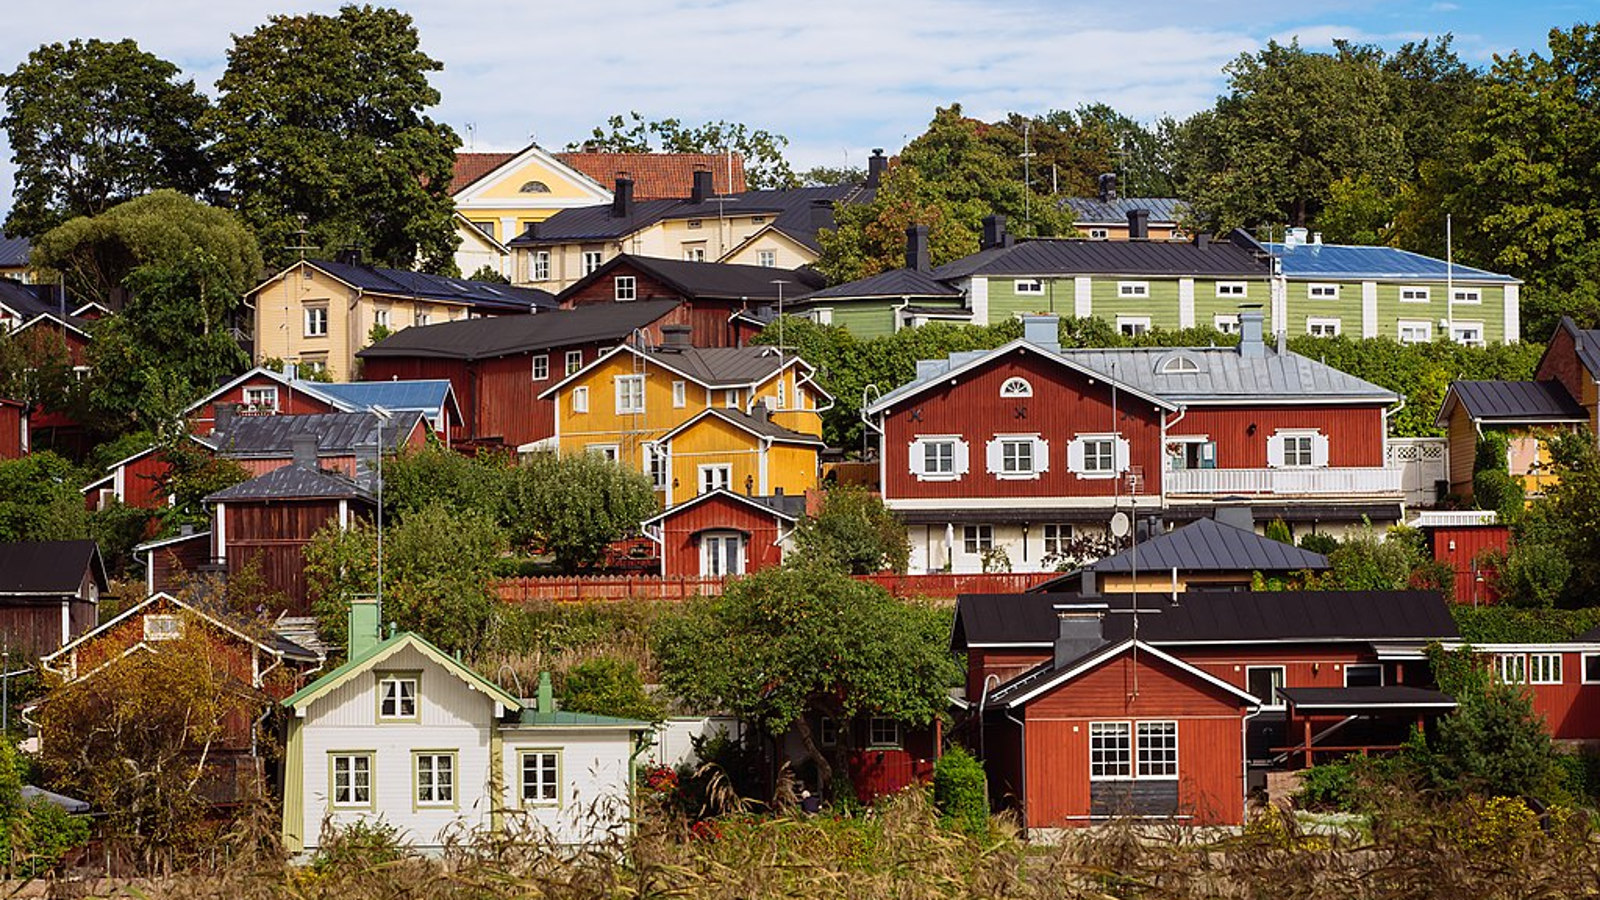 Kuvassa on vanhan Porvoon rinnettä ja siinä olevia taloja, jotka ovat eri värisiä.  Kuva on otettu kesällä aurinkoisella ilmalla.